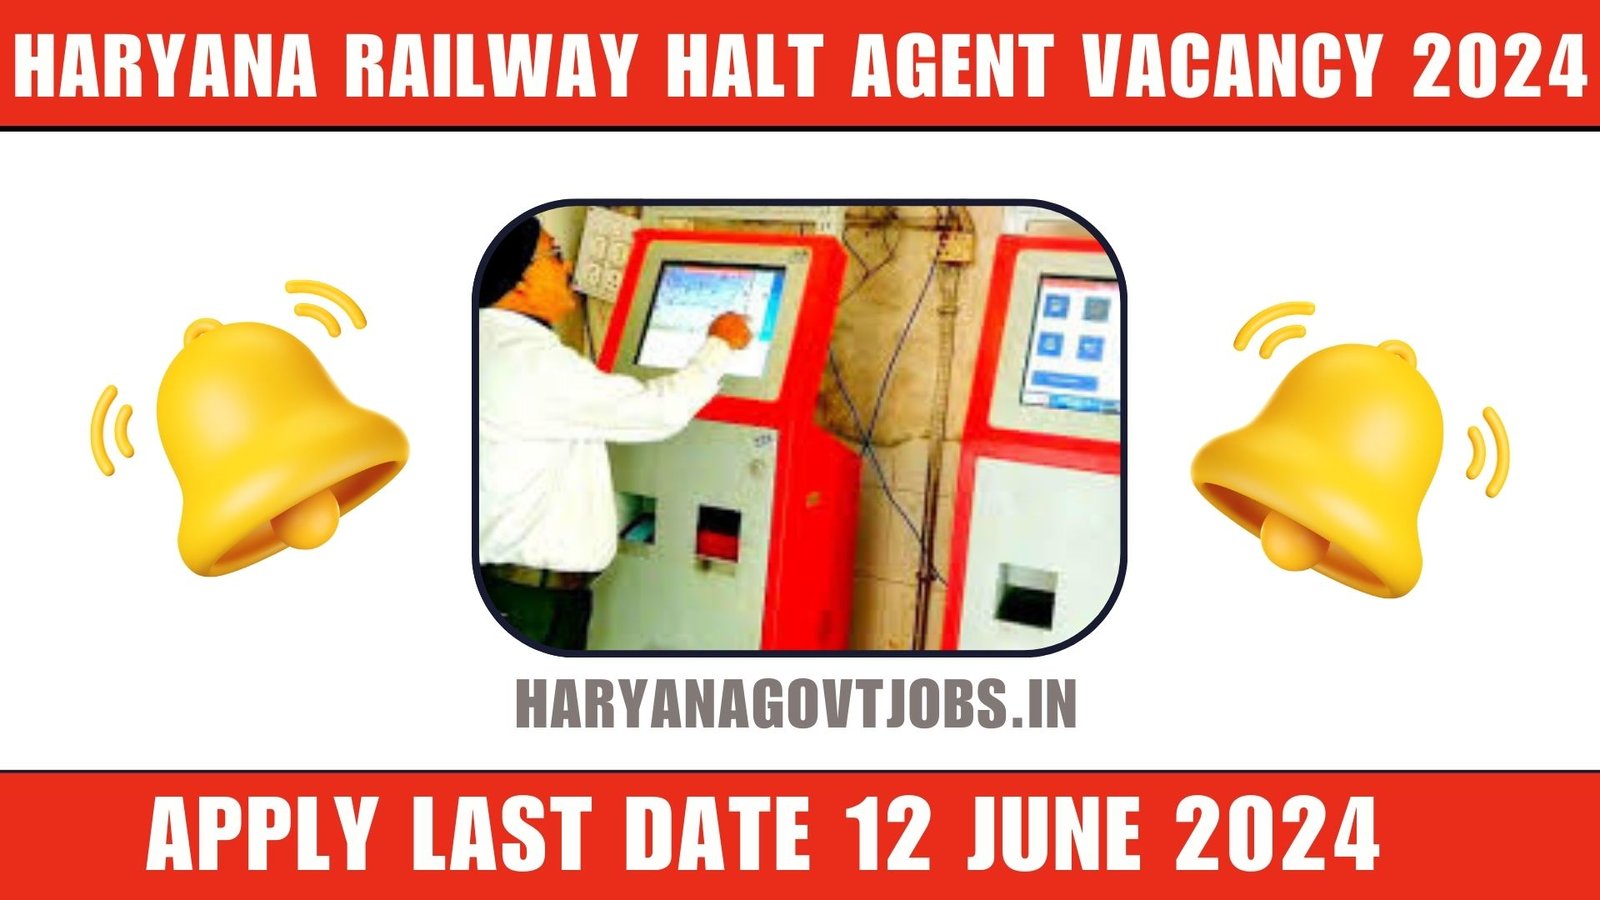 Haryana Railway HALT Agent Vacancy 2024